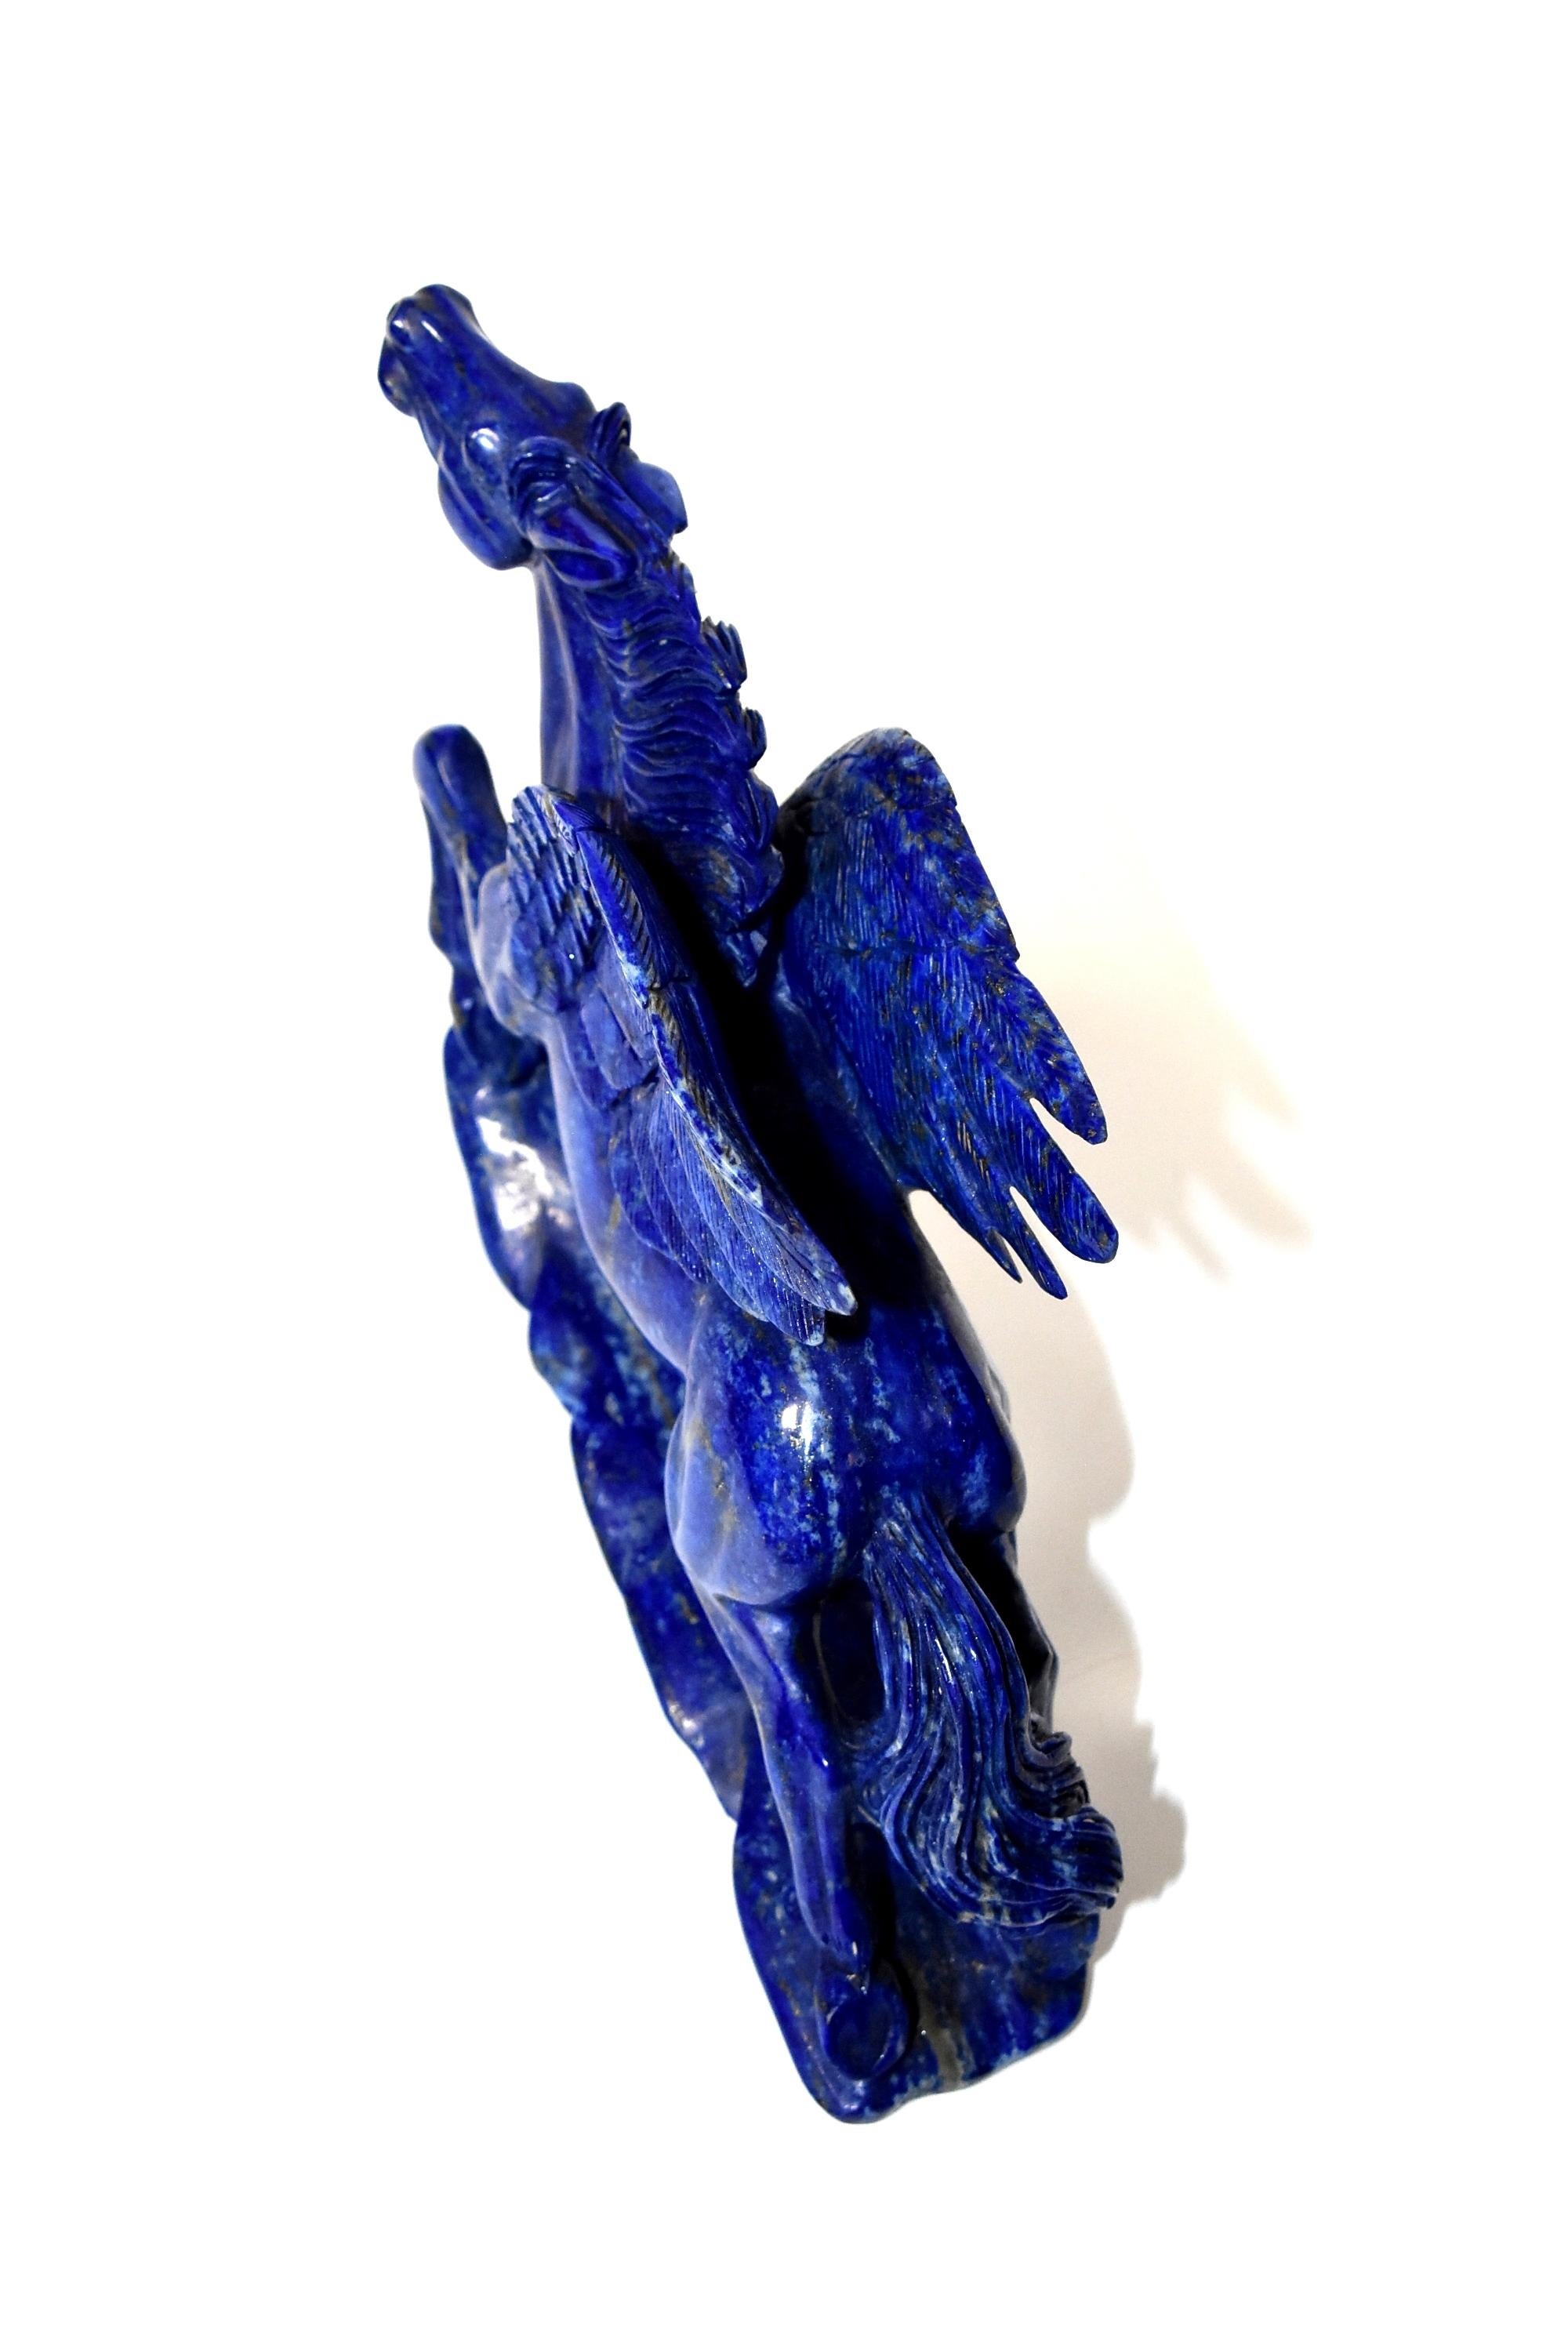 Lapis Lazuli Statue, 4.5 Lb Pegasus Sculpture by Known Artist 11